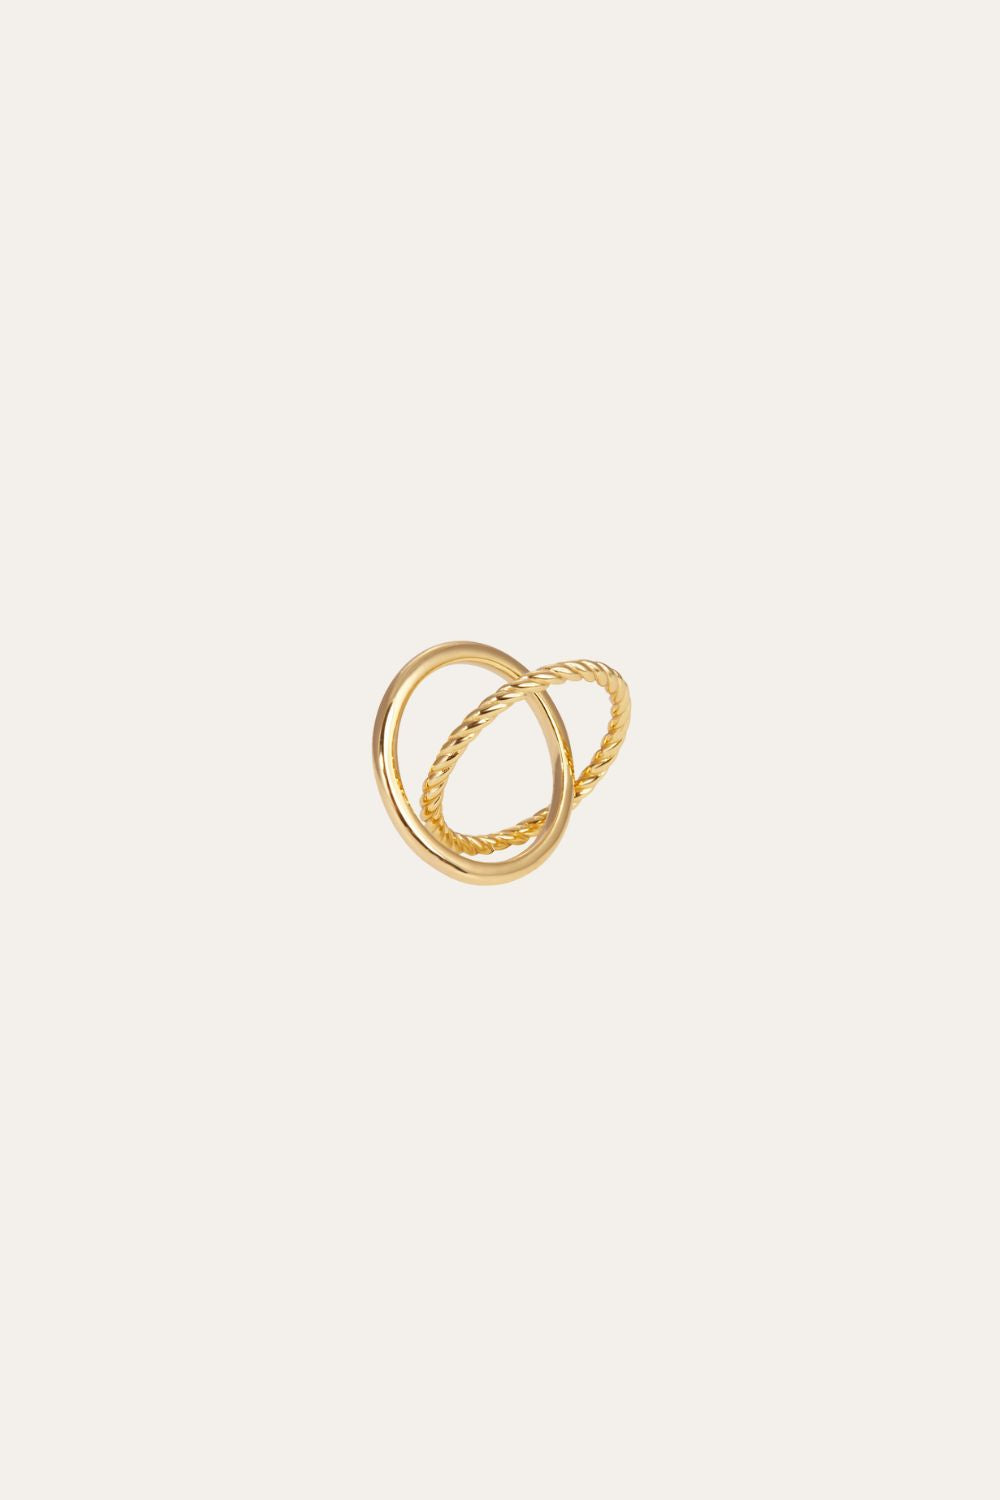 Speira crisscross gold vermeil ring